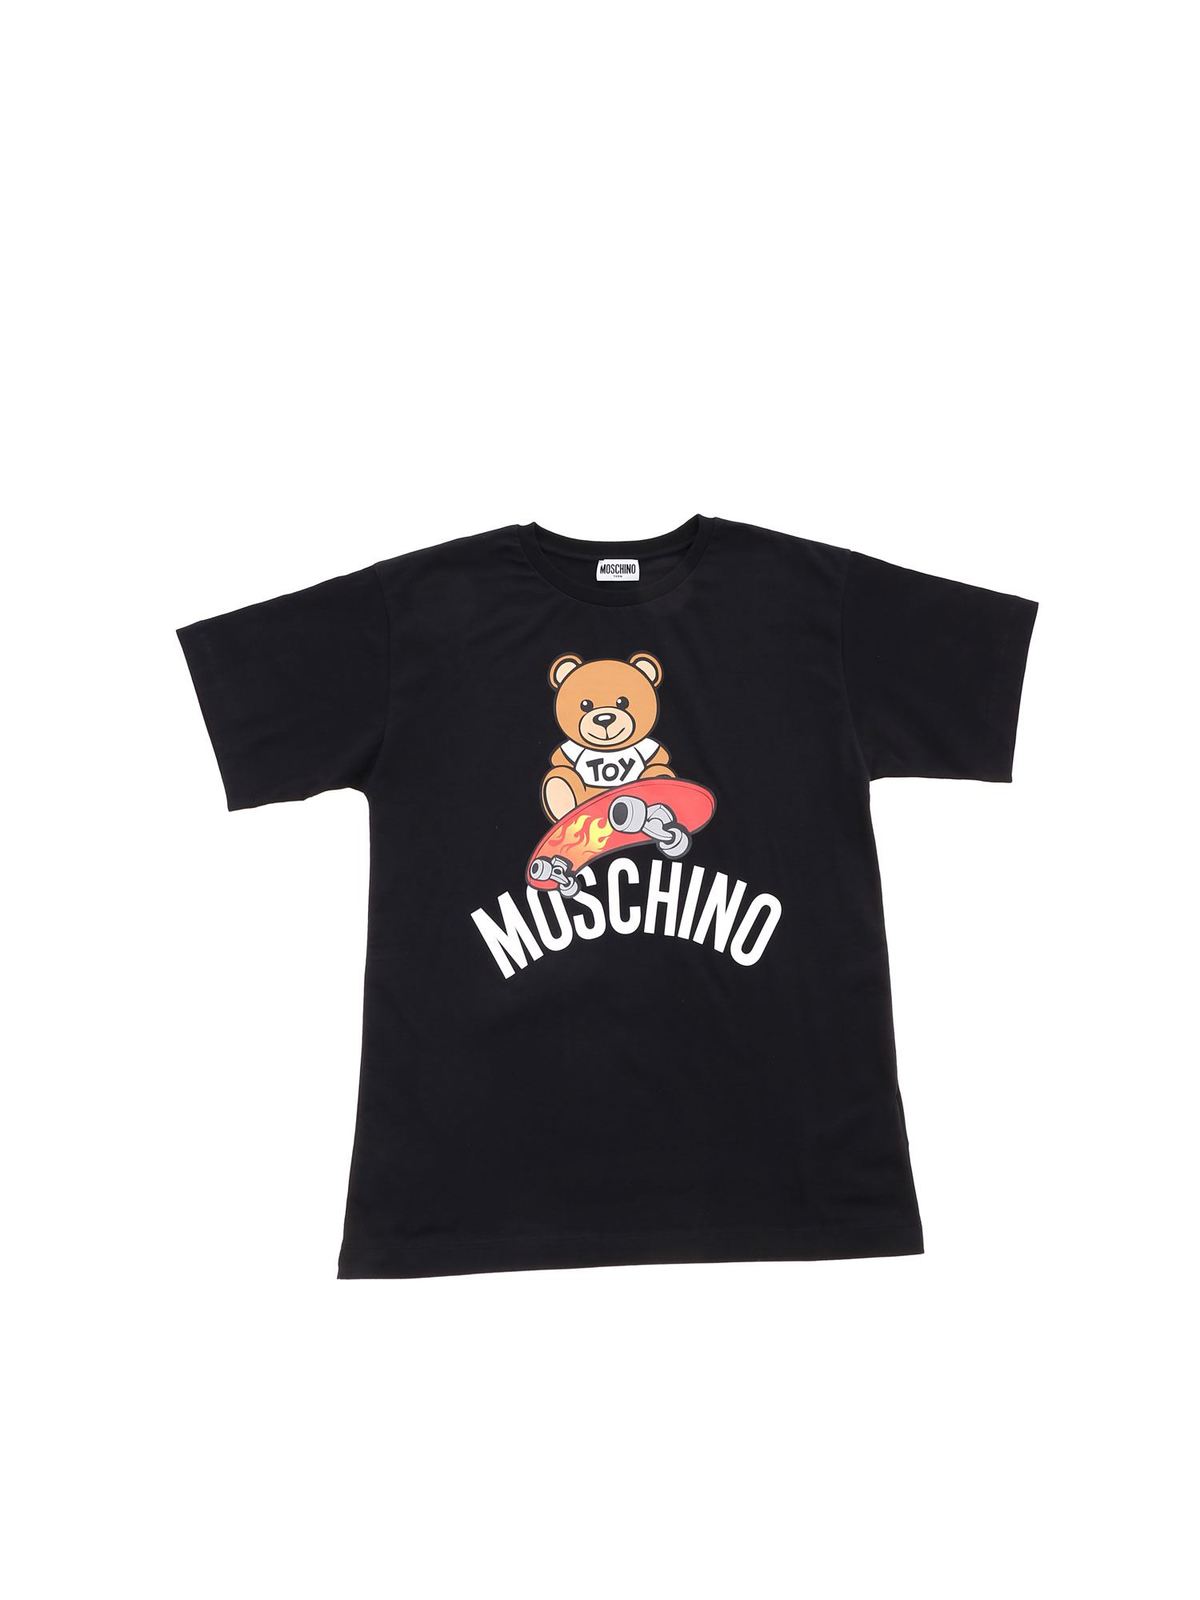 moschino t shirt junior